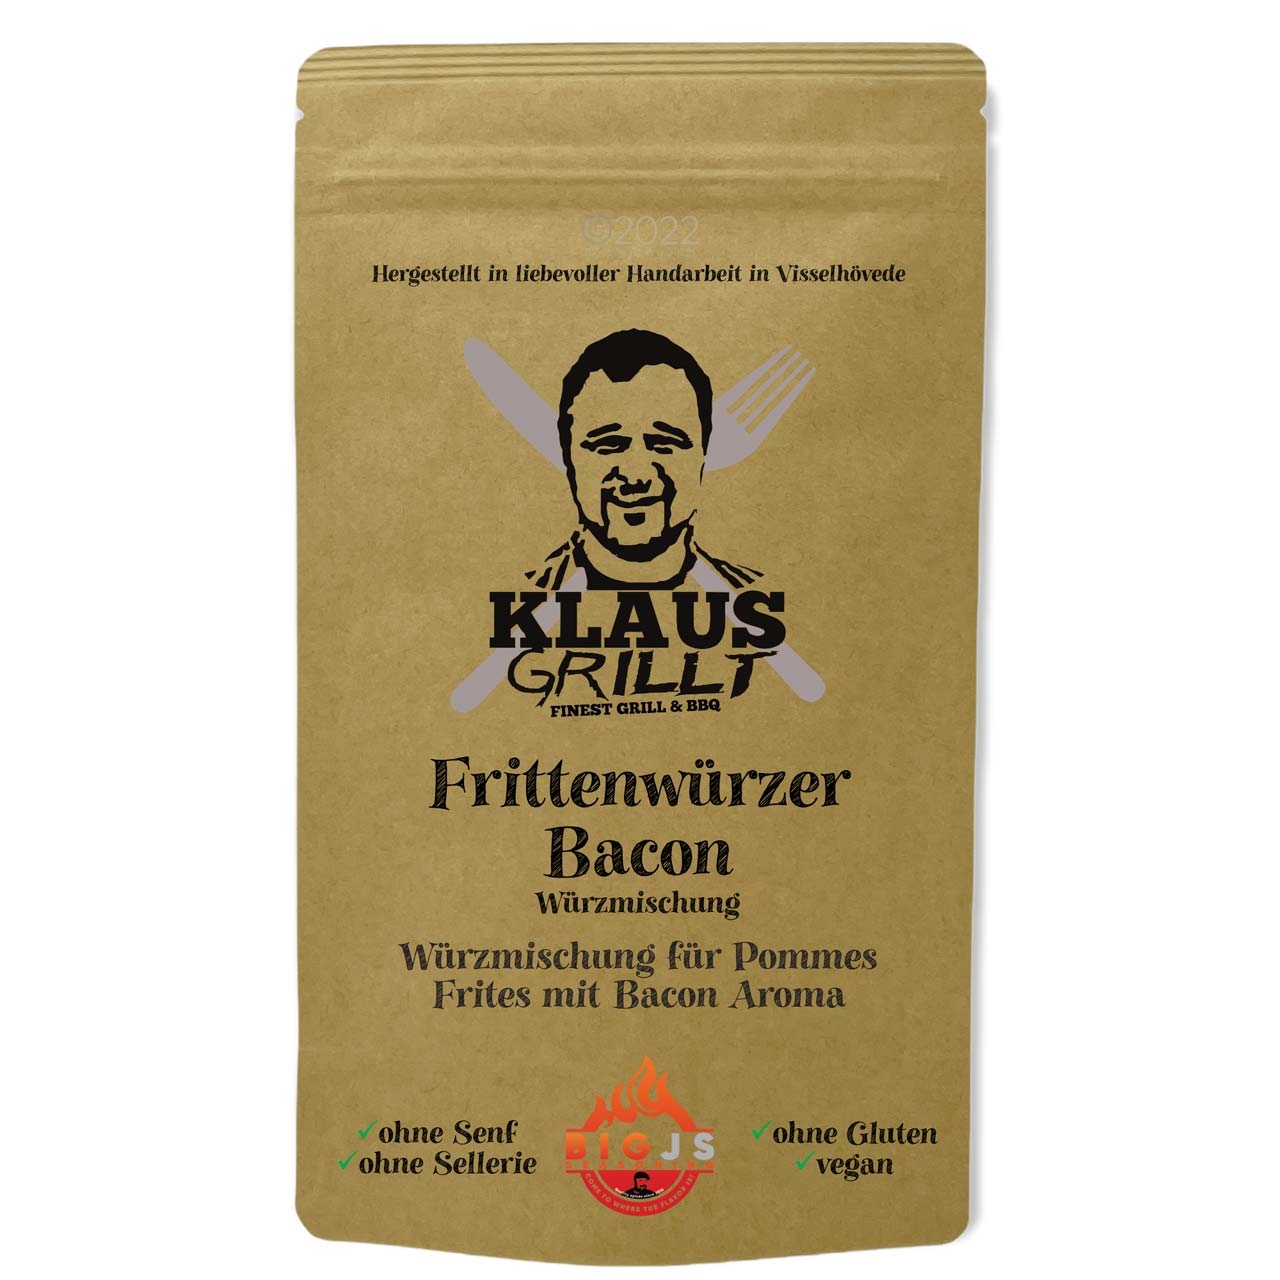 Klaus Grillt - Frittenwürzer Bacon 250g Beutel